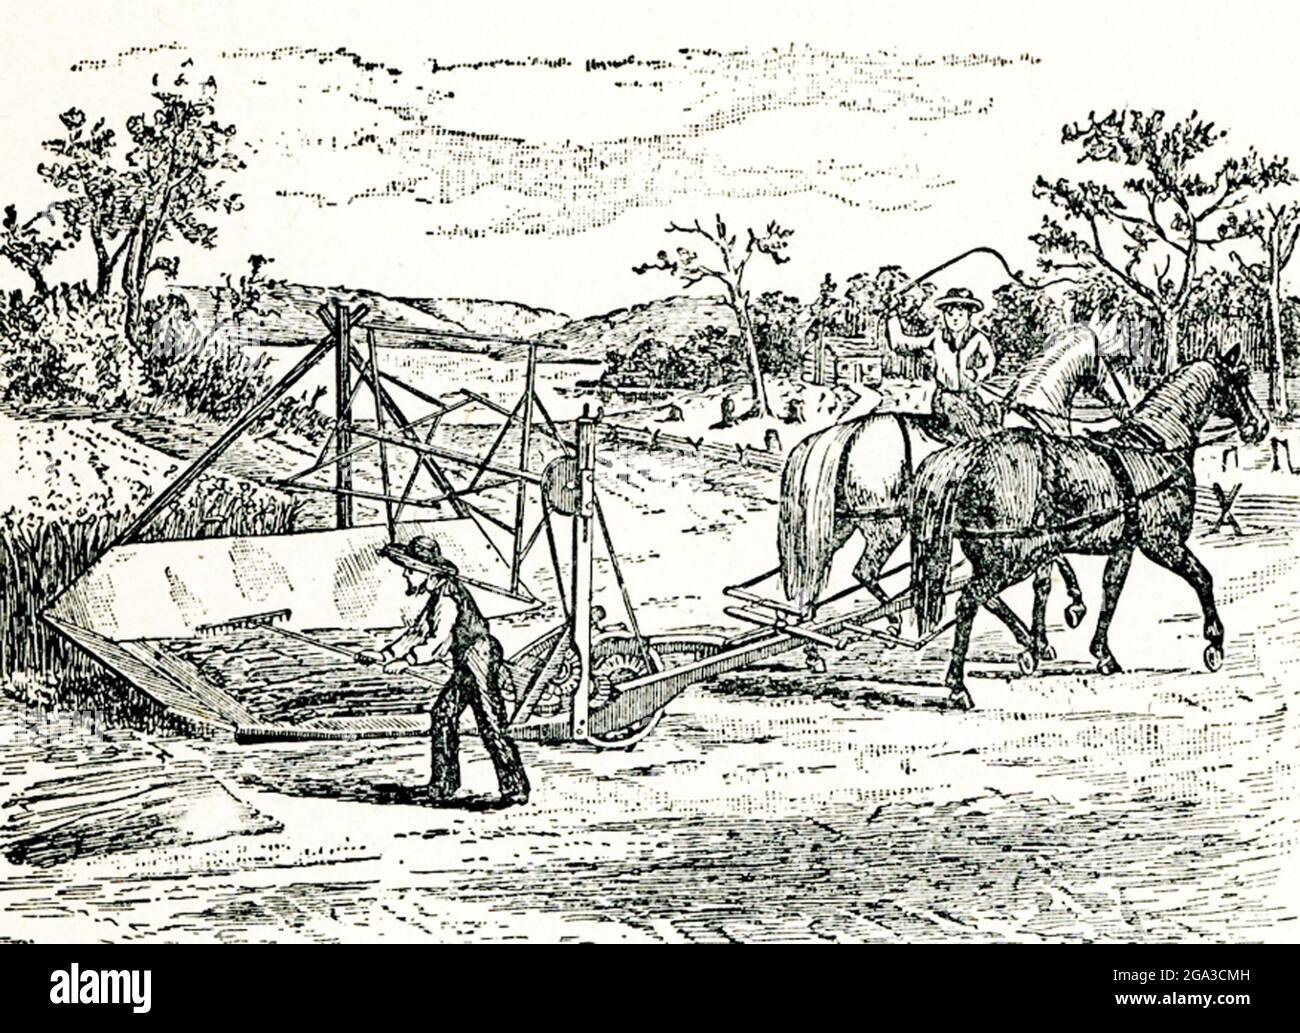 Cyrus McCormick de Virginie a été le fondateur de la McCormick Harvesting machine Company. McCormick construit sur les dessins de son père et est reconnu comme l'inventeur de la couche mécanique. Sa machine, la première photo ici, a été tirée par des chevaux et a coupé le grain d'un côté. L'une des premières expositions publiques de sa couche a été en 1831, mais il a reçu un brevet pour sa machine en 1834. Banque D'Images